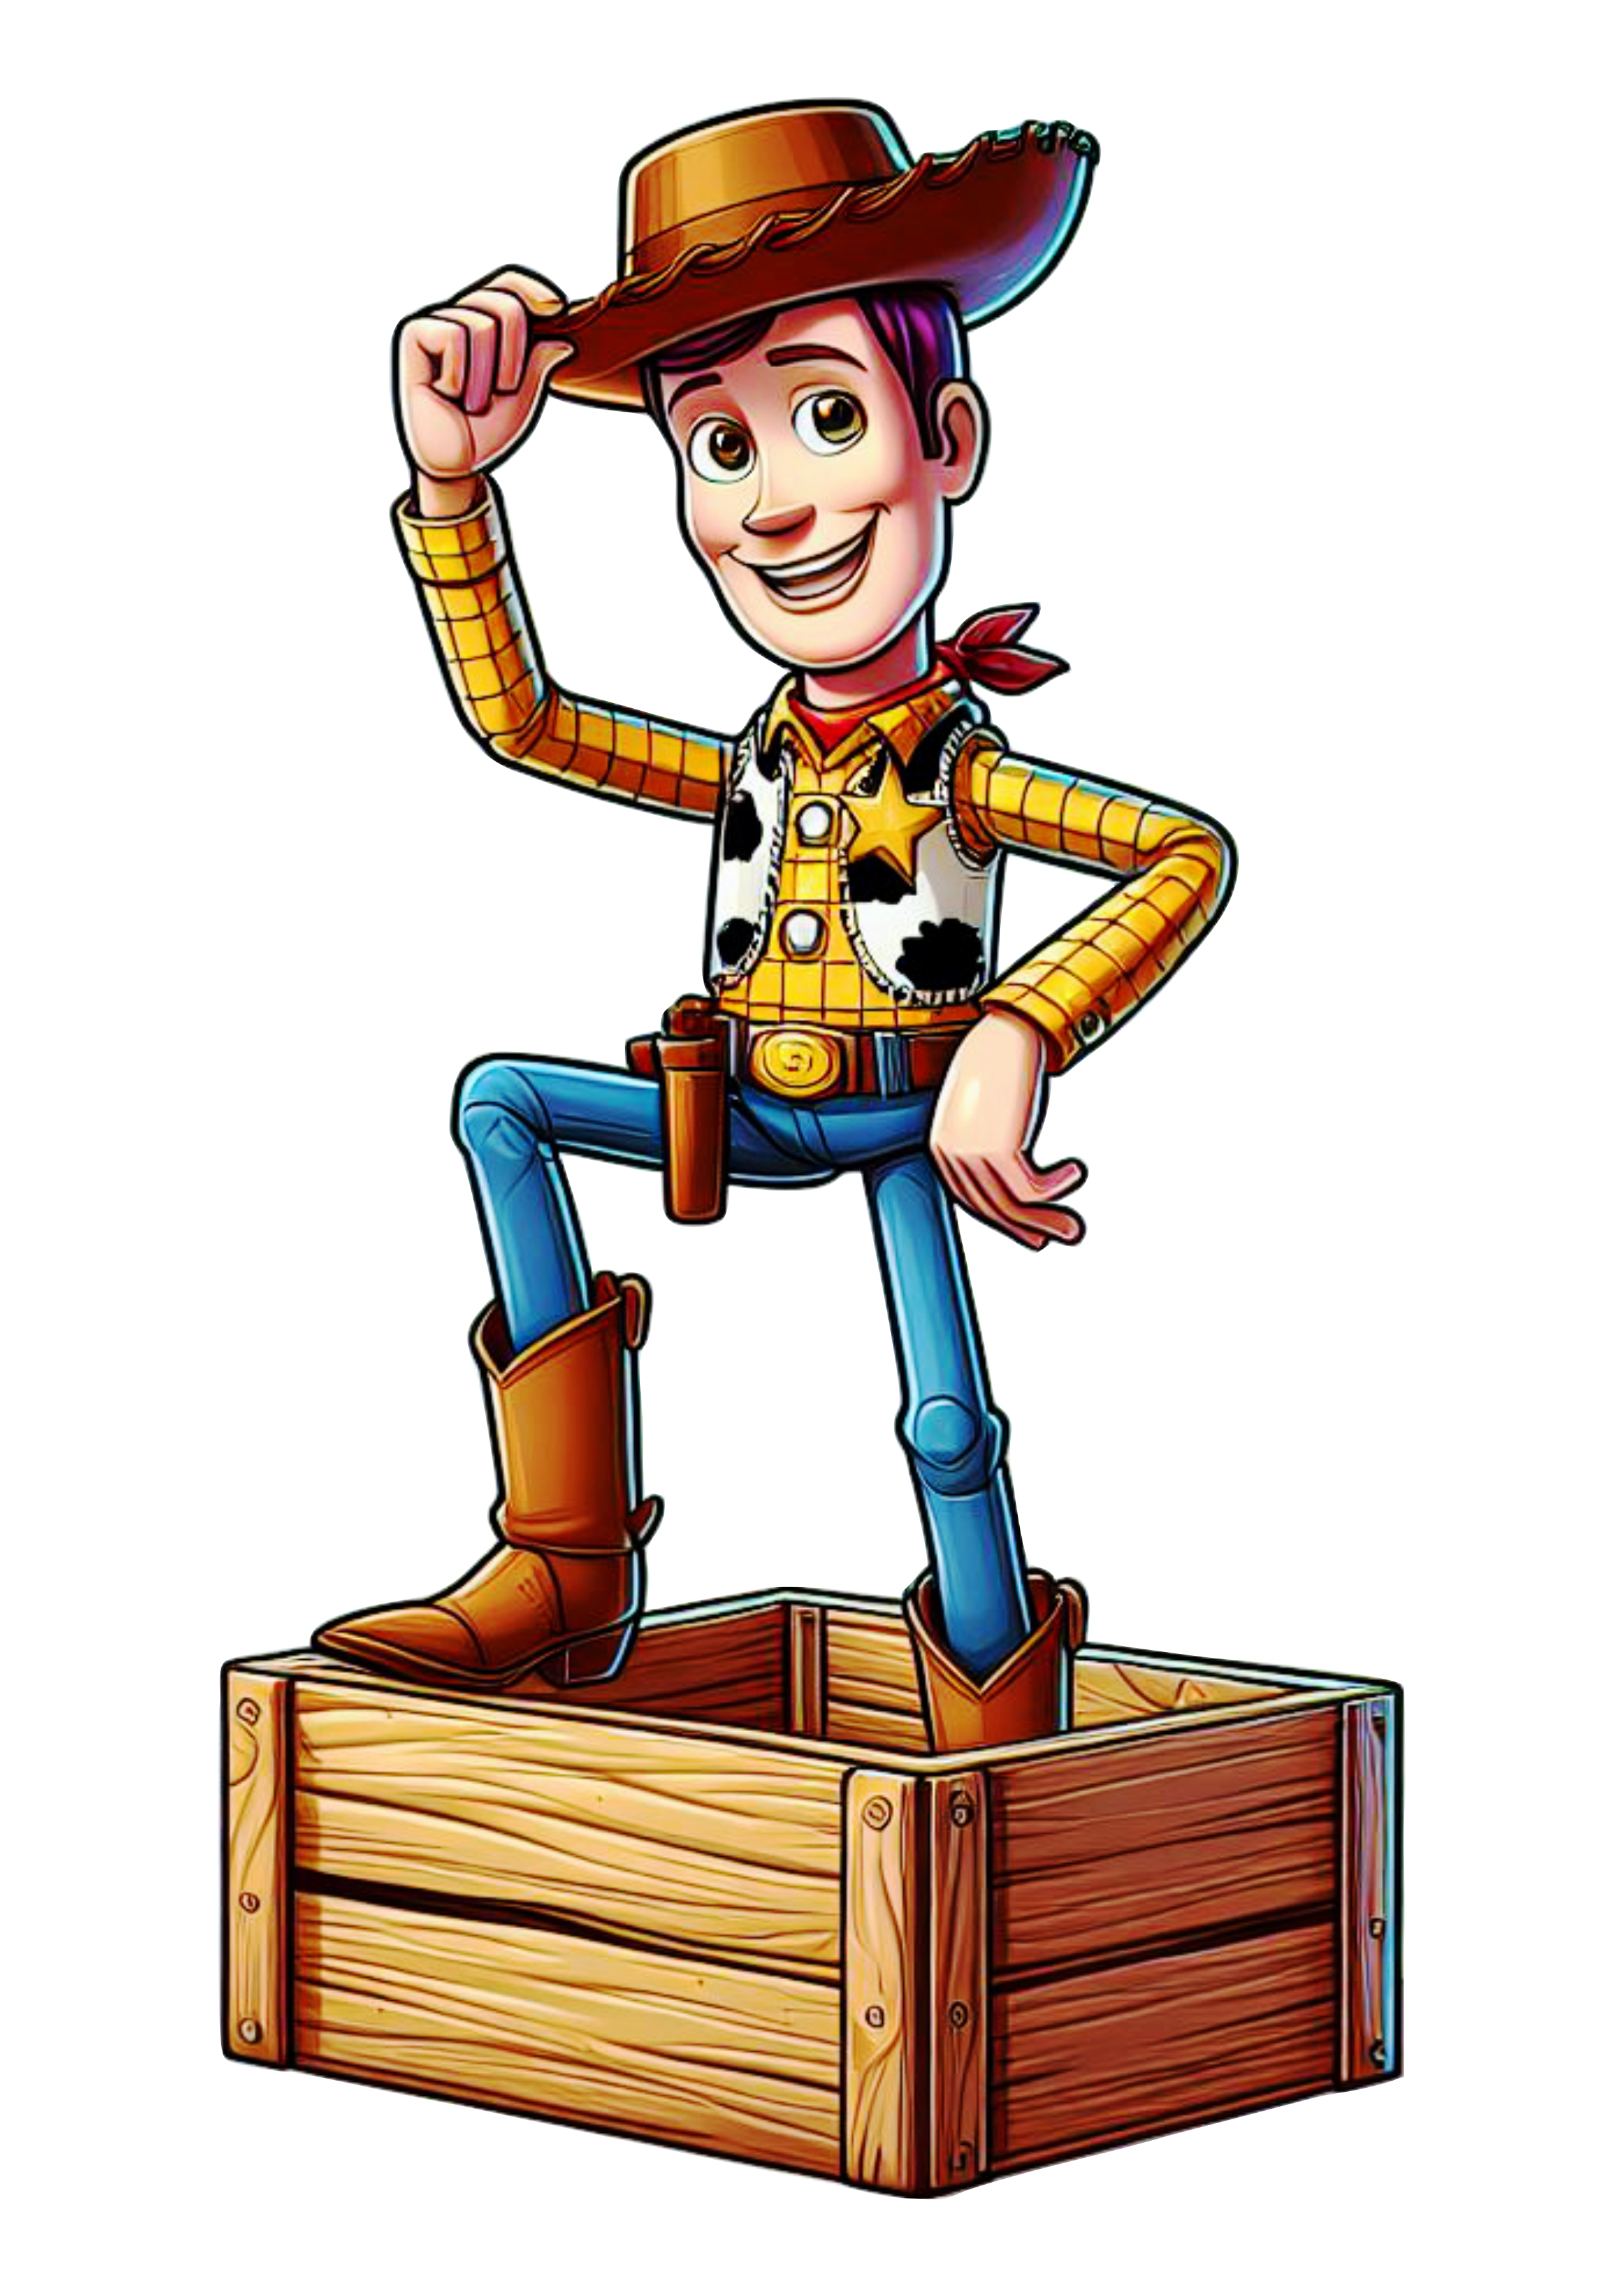 Xerife Woody Toy Story animação infantil Disney png image clipart fundo transparente desenho